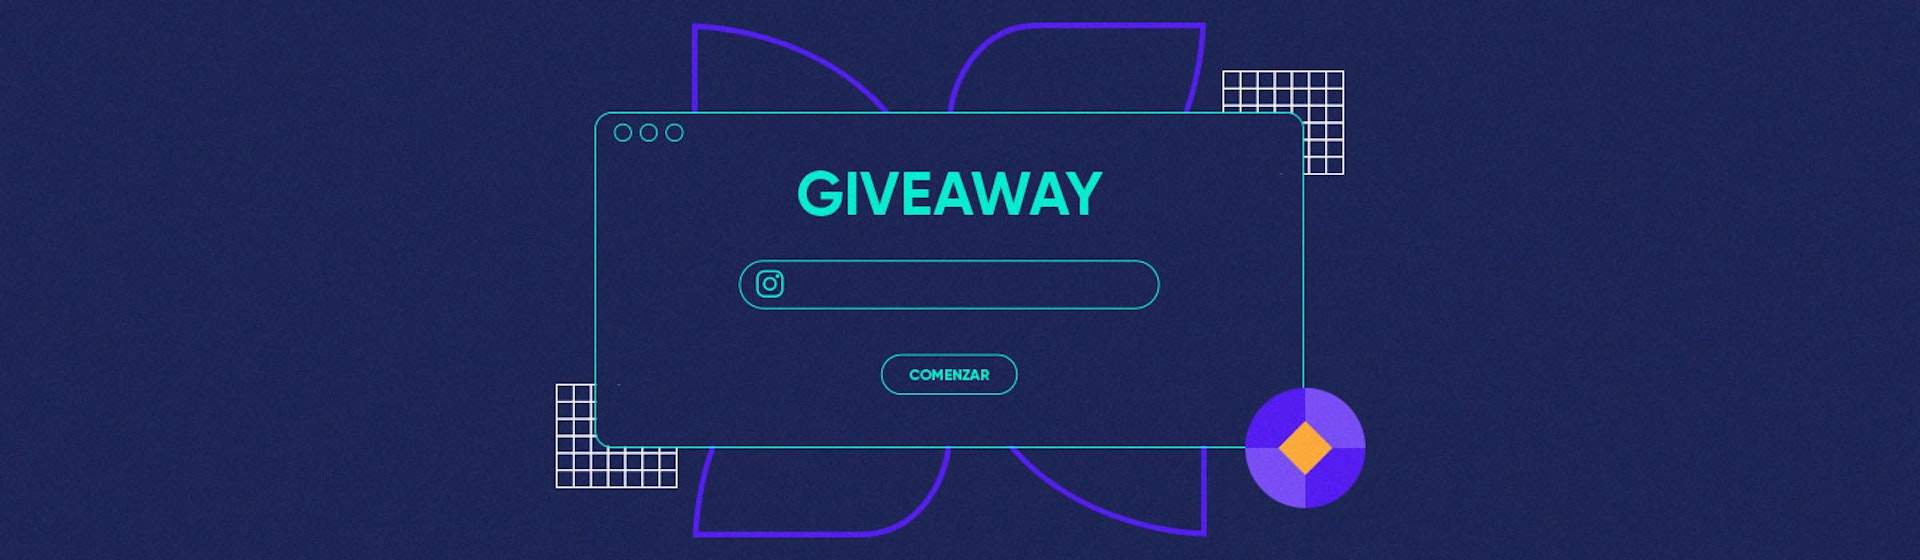 App para giveaway: +10 herramientas para premiar la fidelidad de tus seguidores